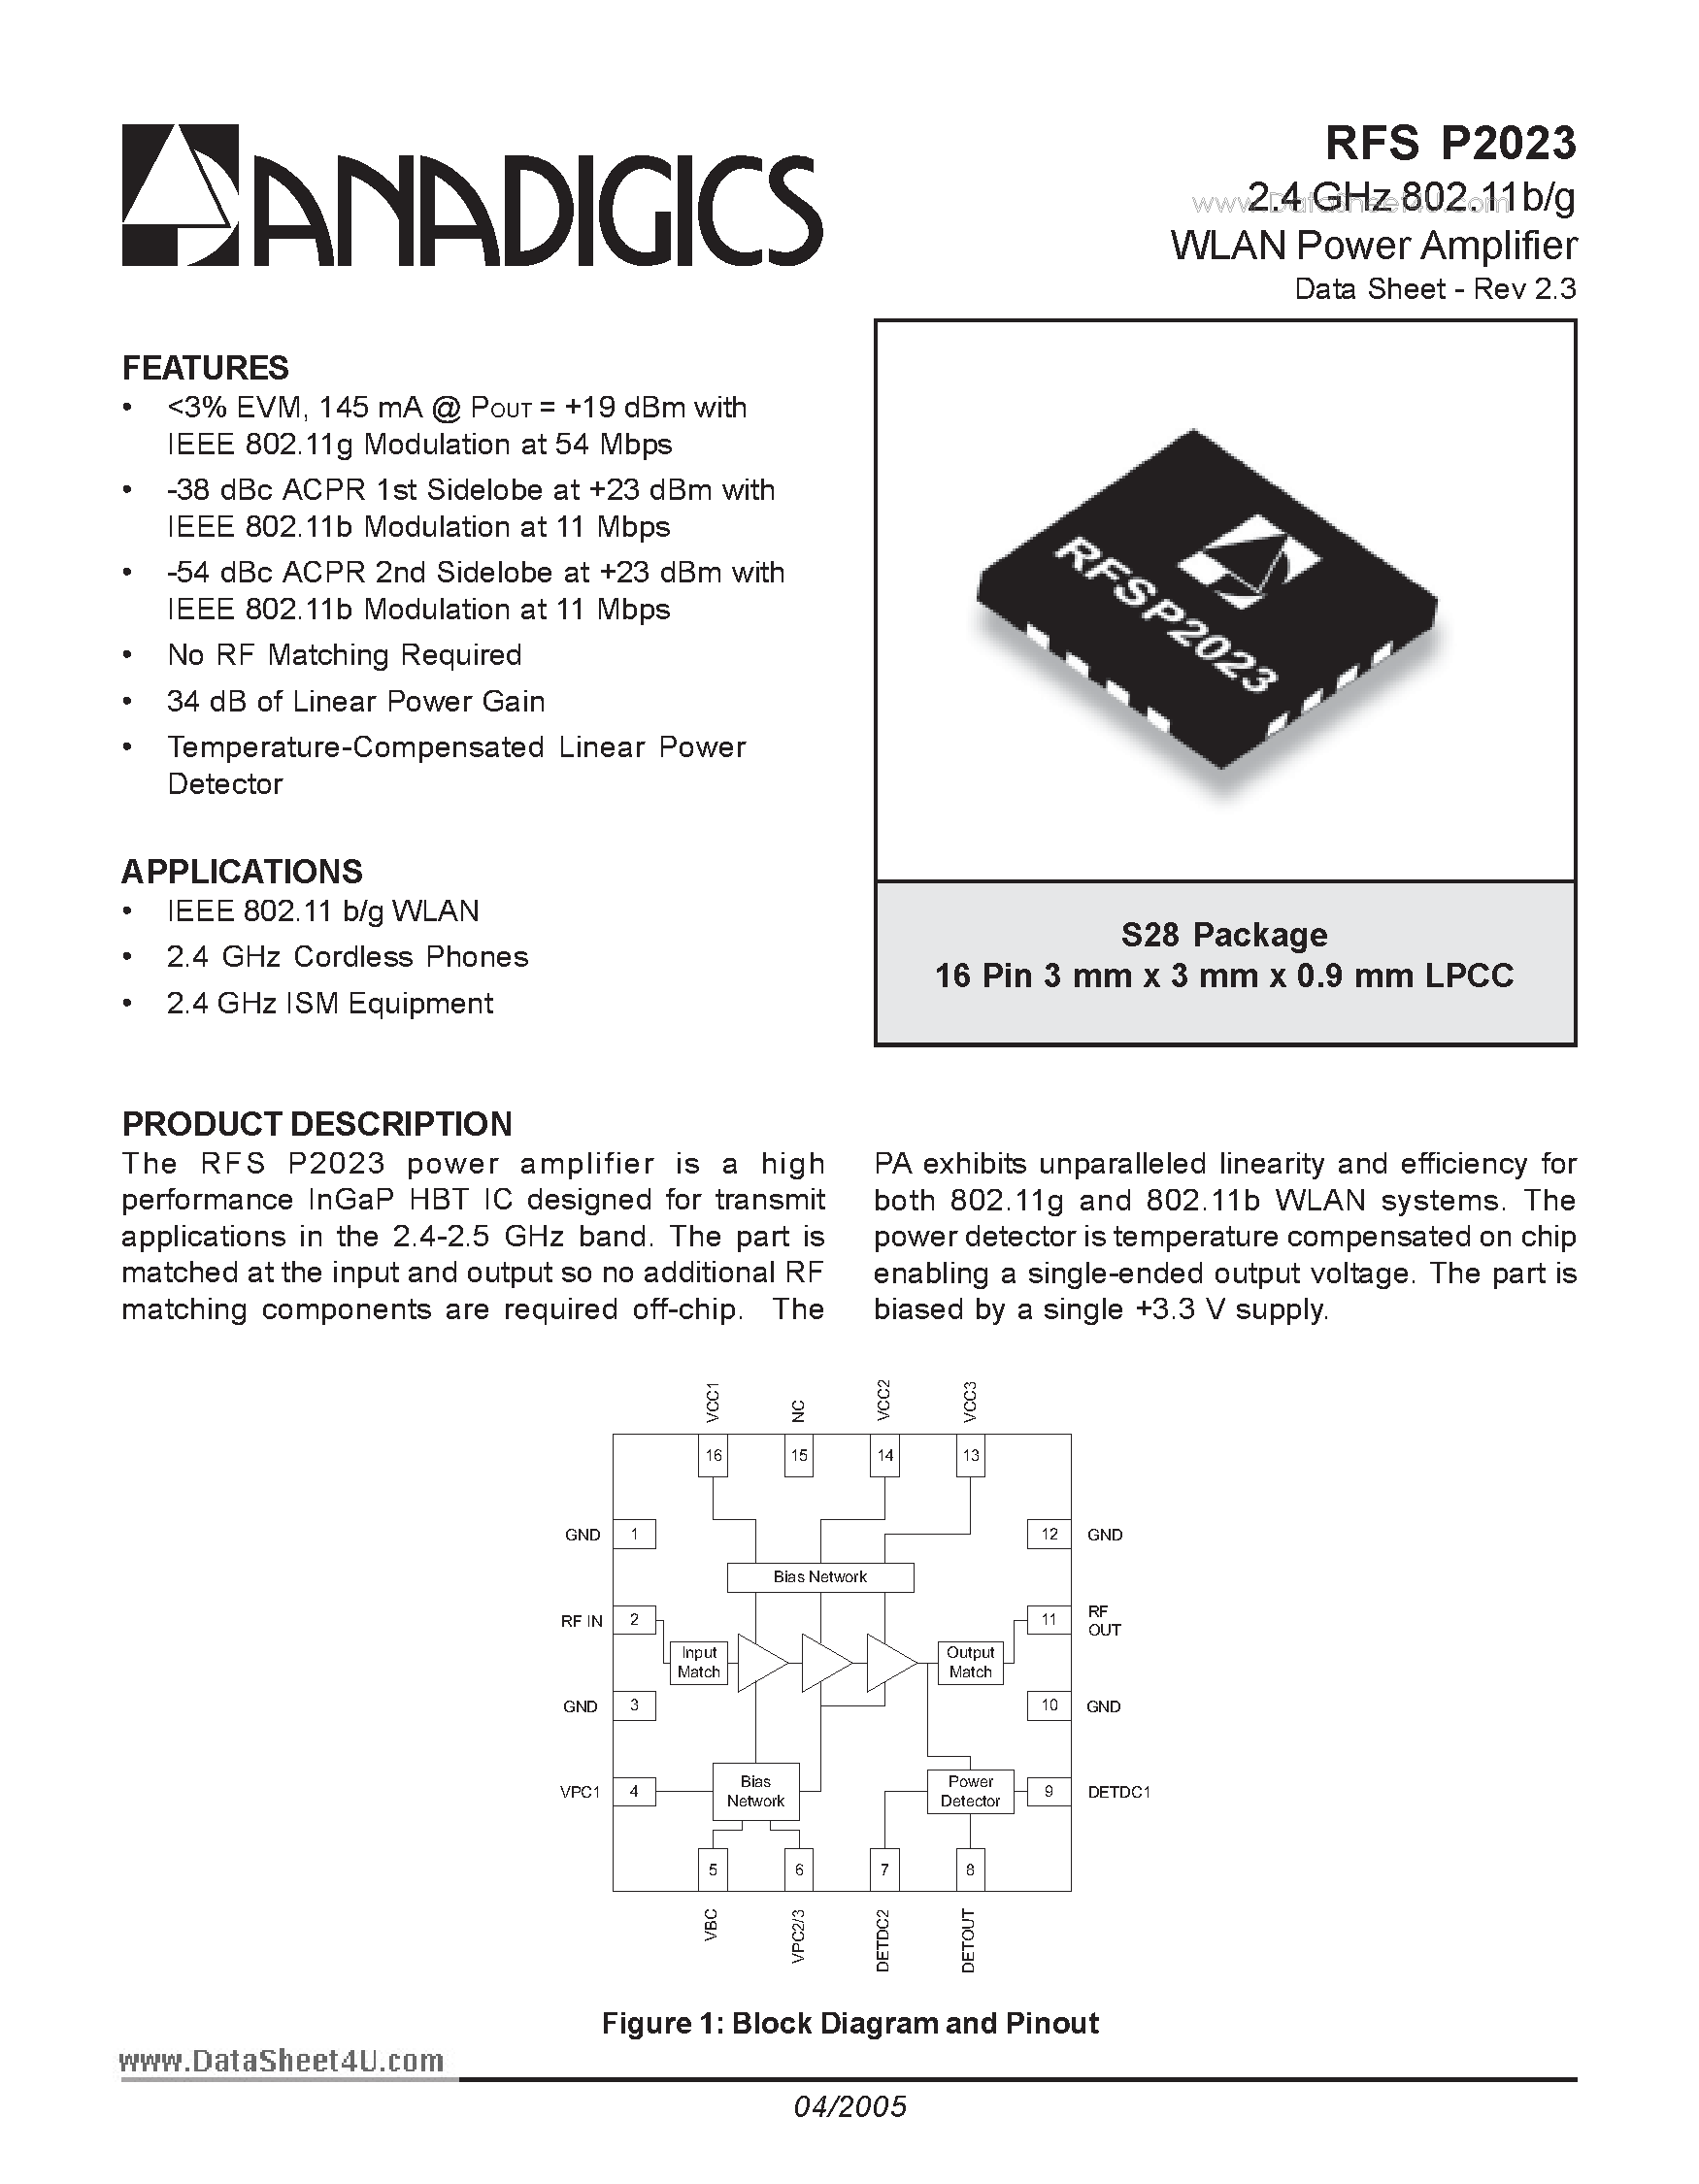 Datasheet RFSP2023 - 2.4 GHz 802.11b/g WLAN Power Amplifier page 1